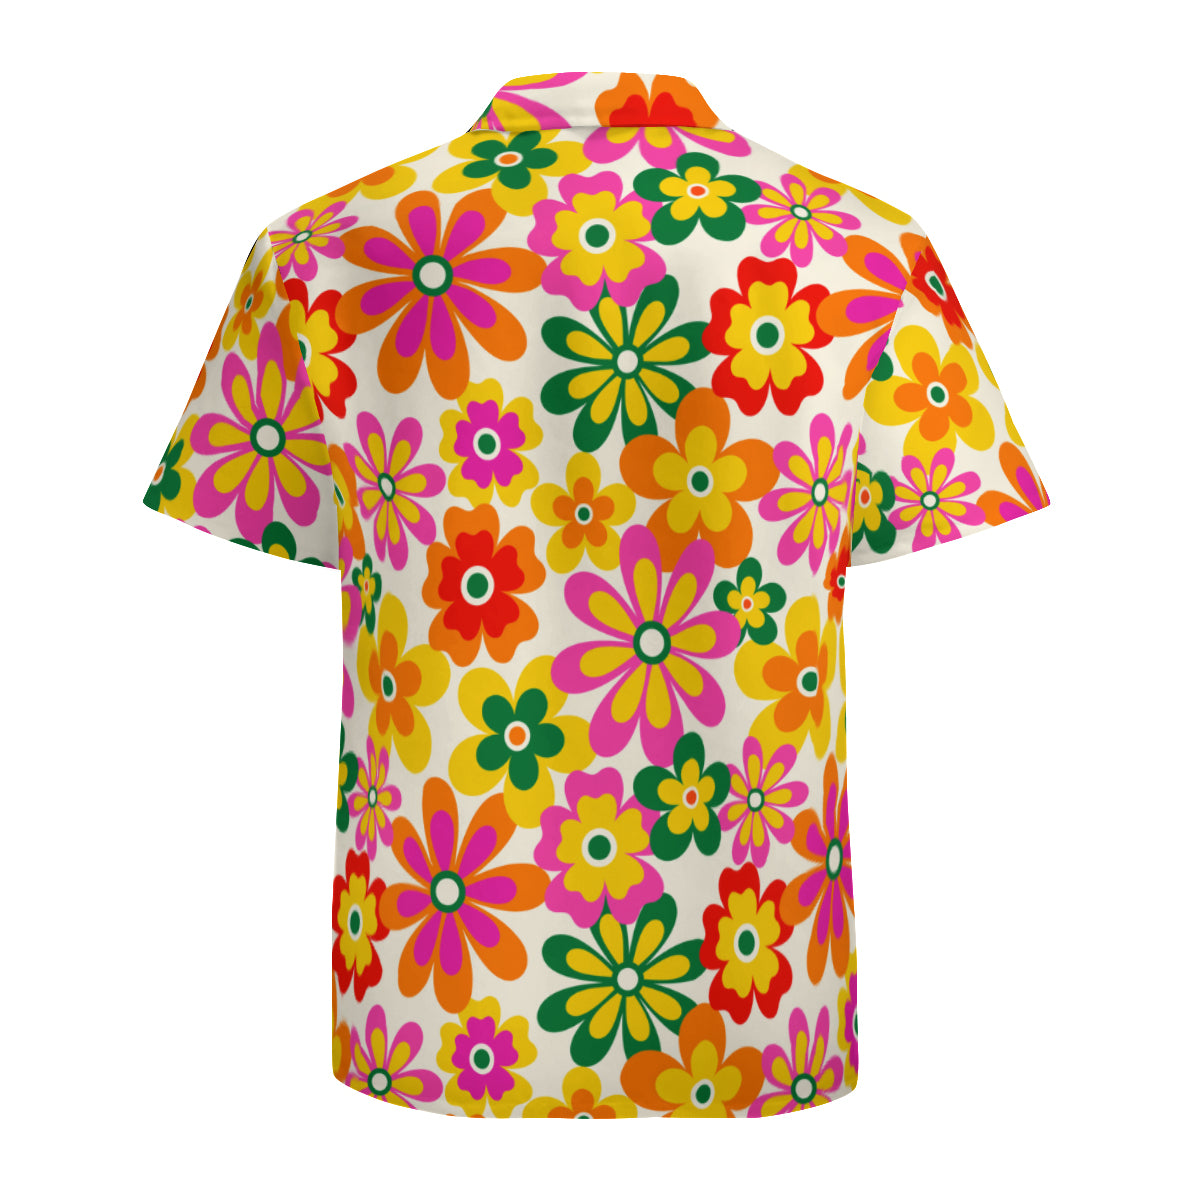 Neon Floral Shirt Men, 60s 70s style shirt men, 70s clothing men, Hippie Shirt Men, Retro Shirt Men, Vintage style shirt men, Hippie Top men